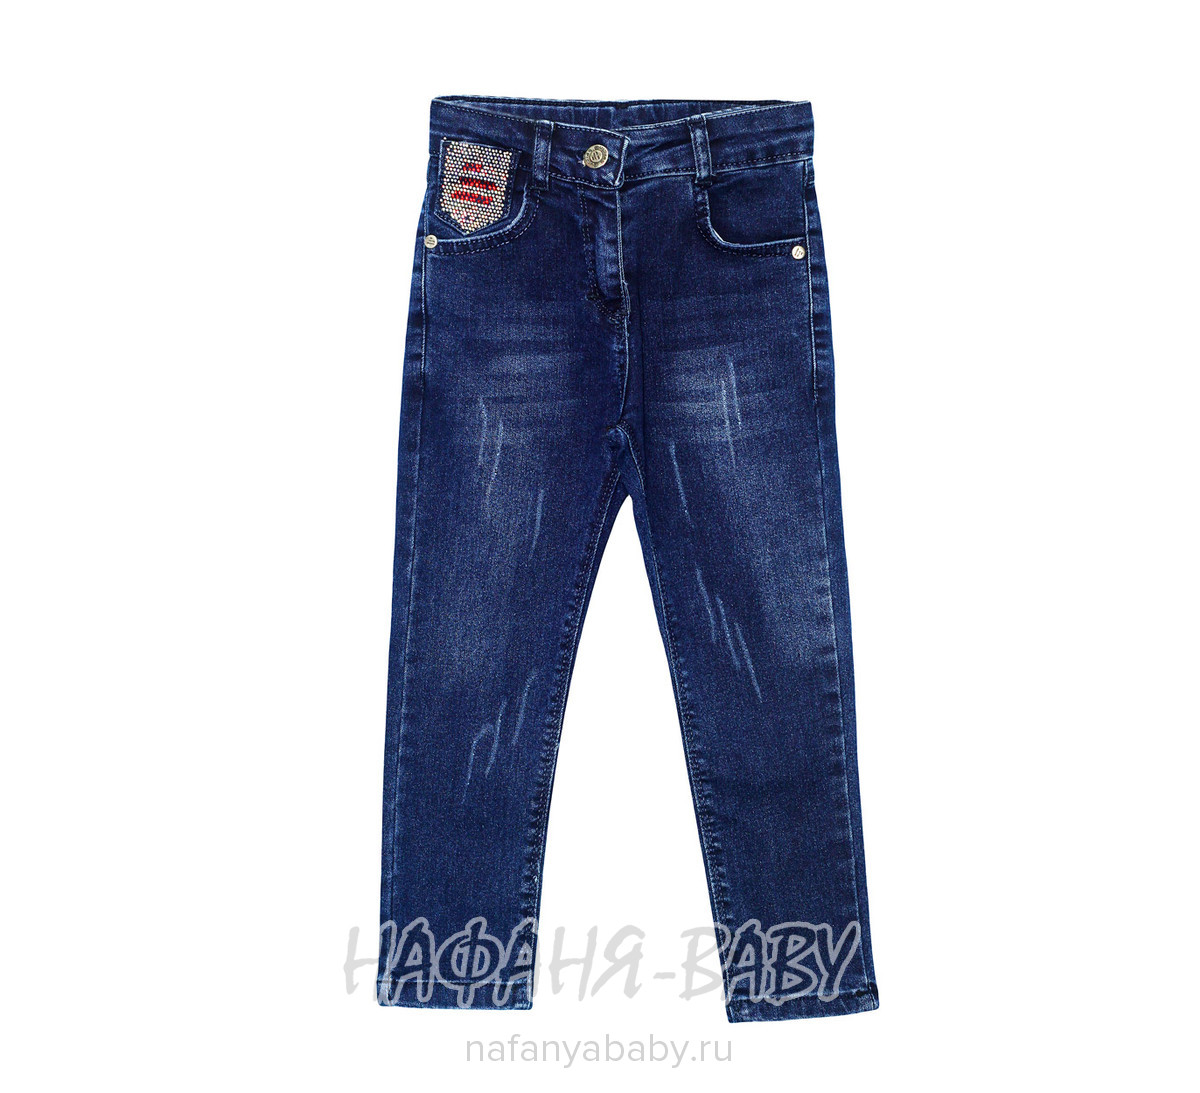 Подростковые джинсы со стразами Sercino арт: 59983, 10-15 лет, 5-9 лет, оптом Турция